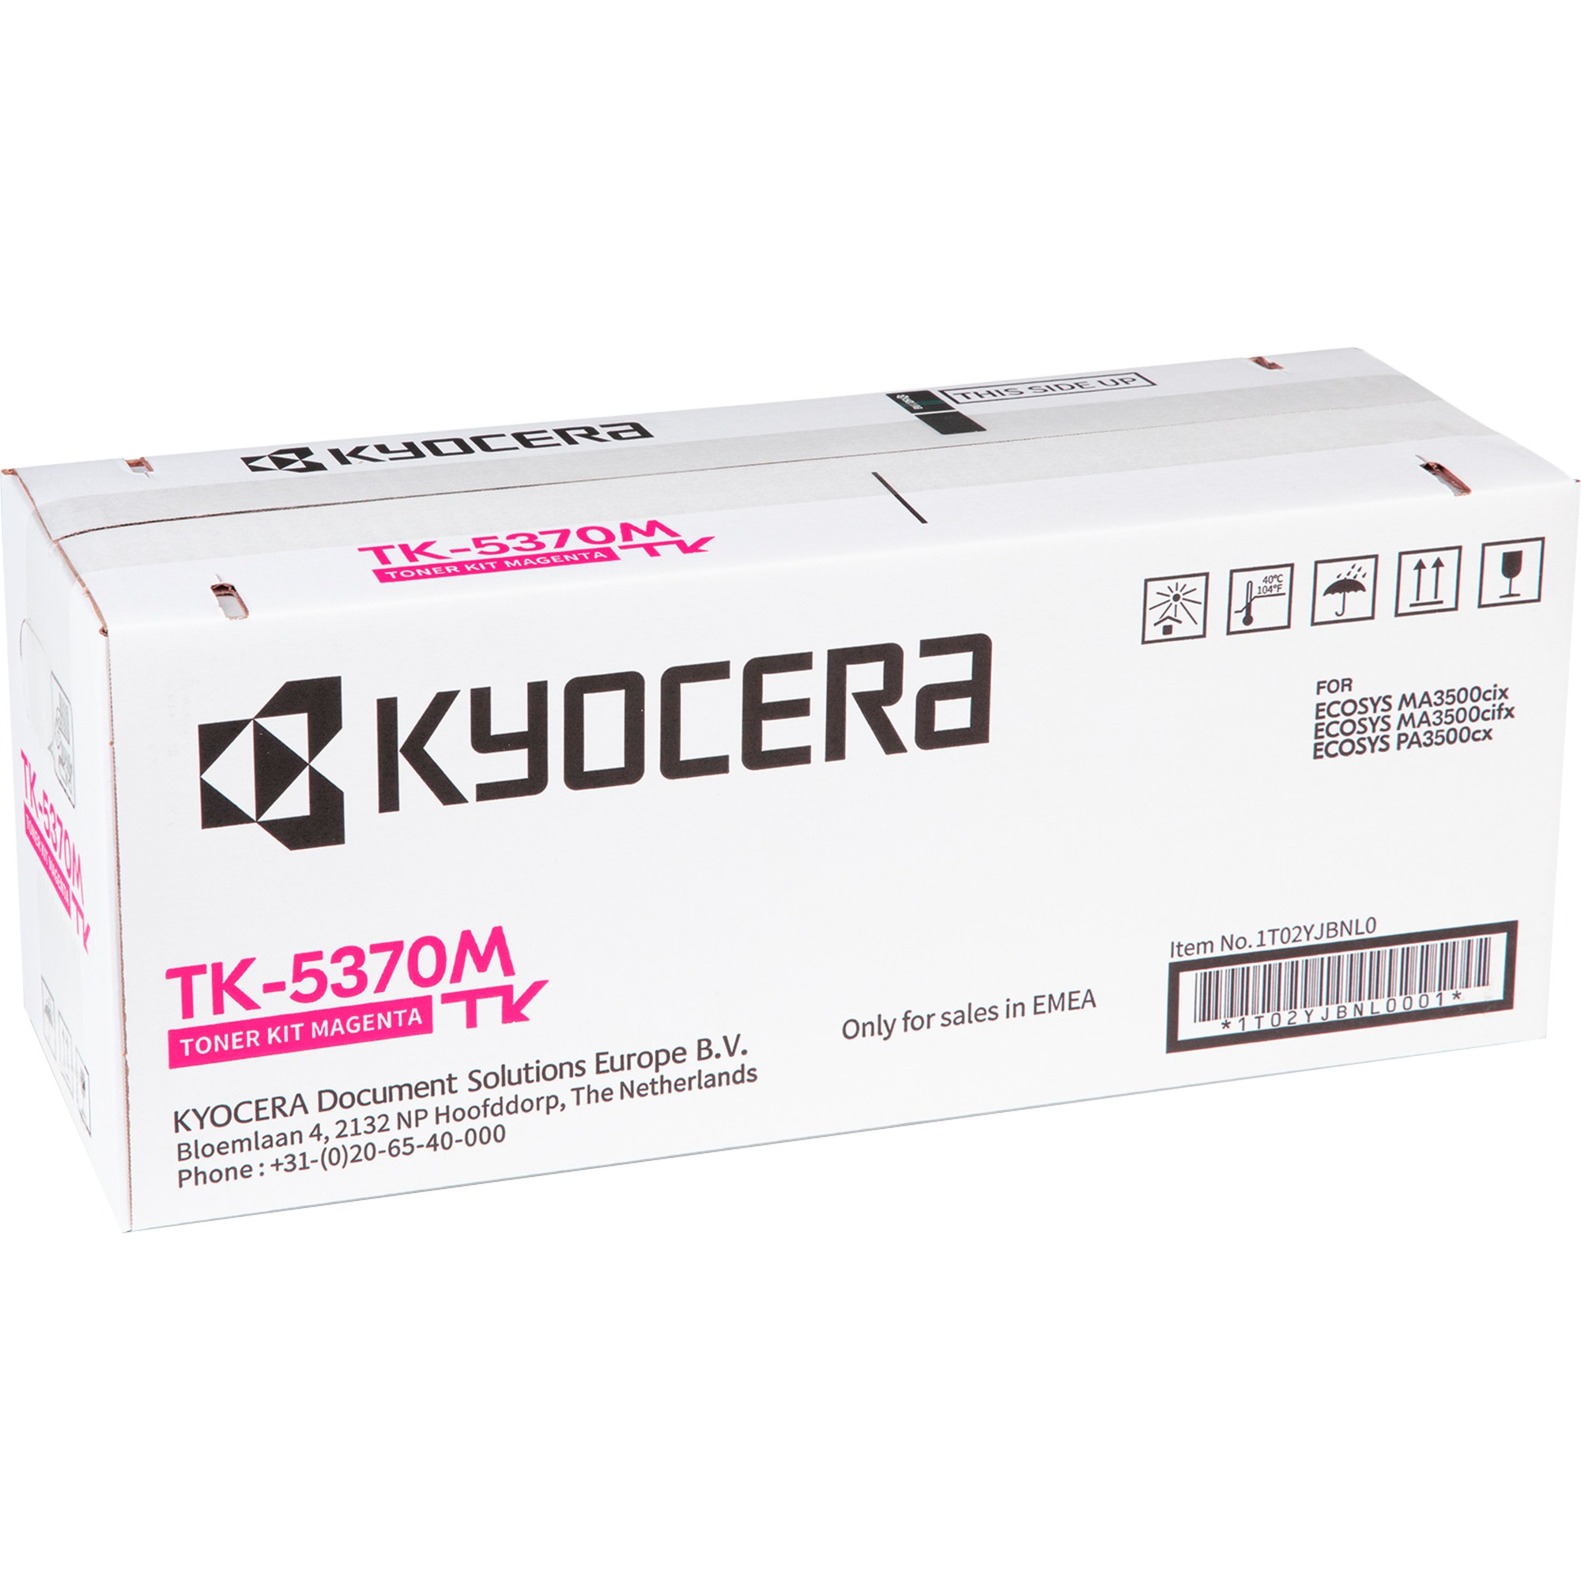 Toner magenta TK-5370M von Kyocera